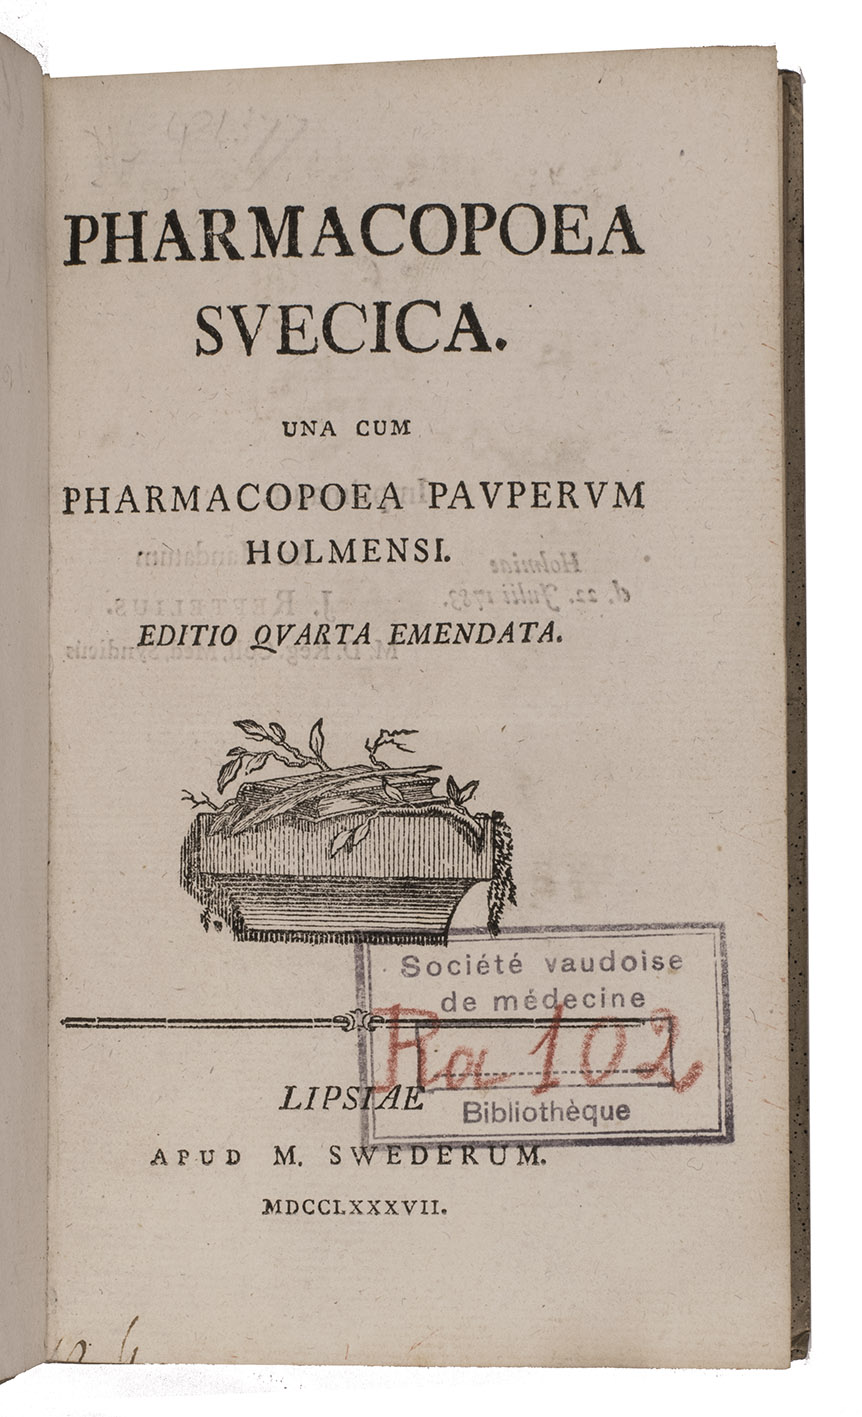 [SWEDEN  PHARMACOPOEIA]. - Pharmacopoea Svecica. Una cum pharmacopoea pauperum Holmensi. Editio quarta emendata.Leipzig, Magnus Swederus, 1787. 8vo. Contemporary bands.